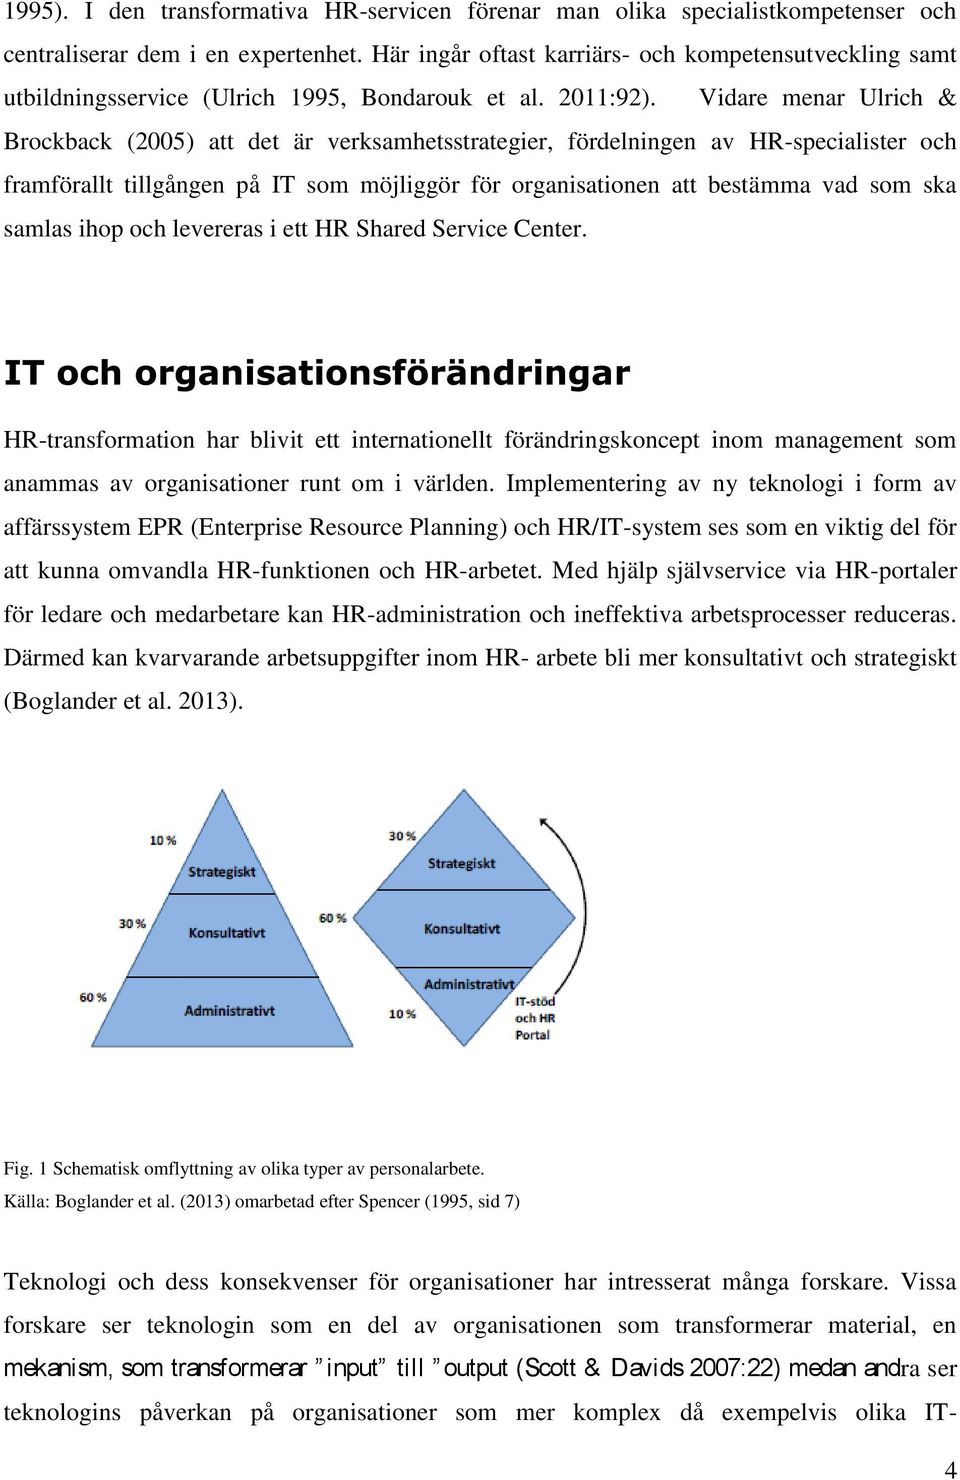 Vidare menar Ulrich & Brockback (2005) att det är verksamhetsstrategier, fördelningen av HR-specialister och framförallt tillgången på IT som möjliggör för organisationen att bestämma vad som ska